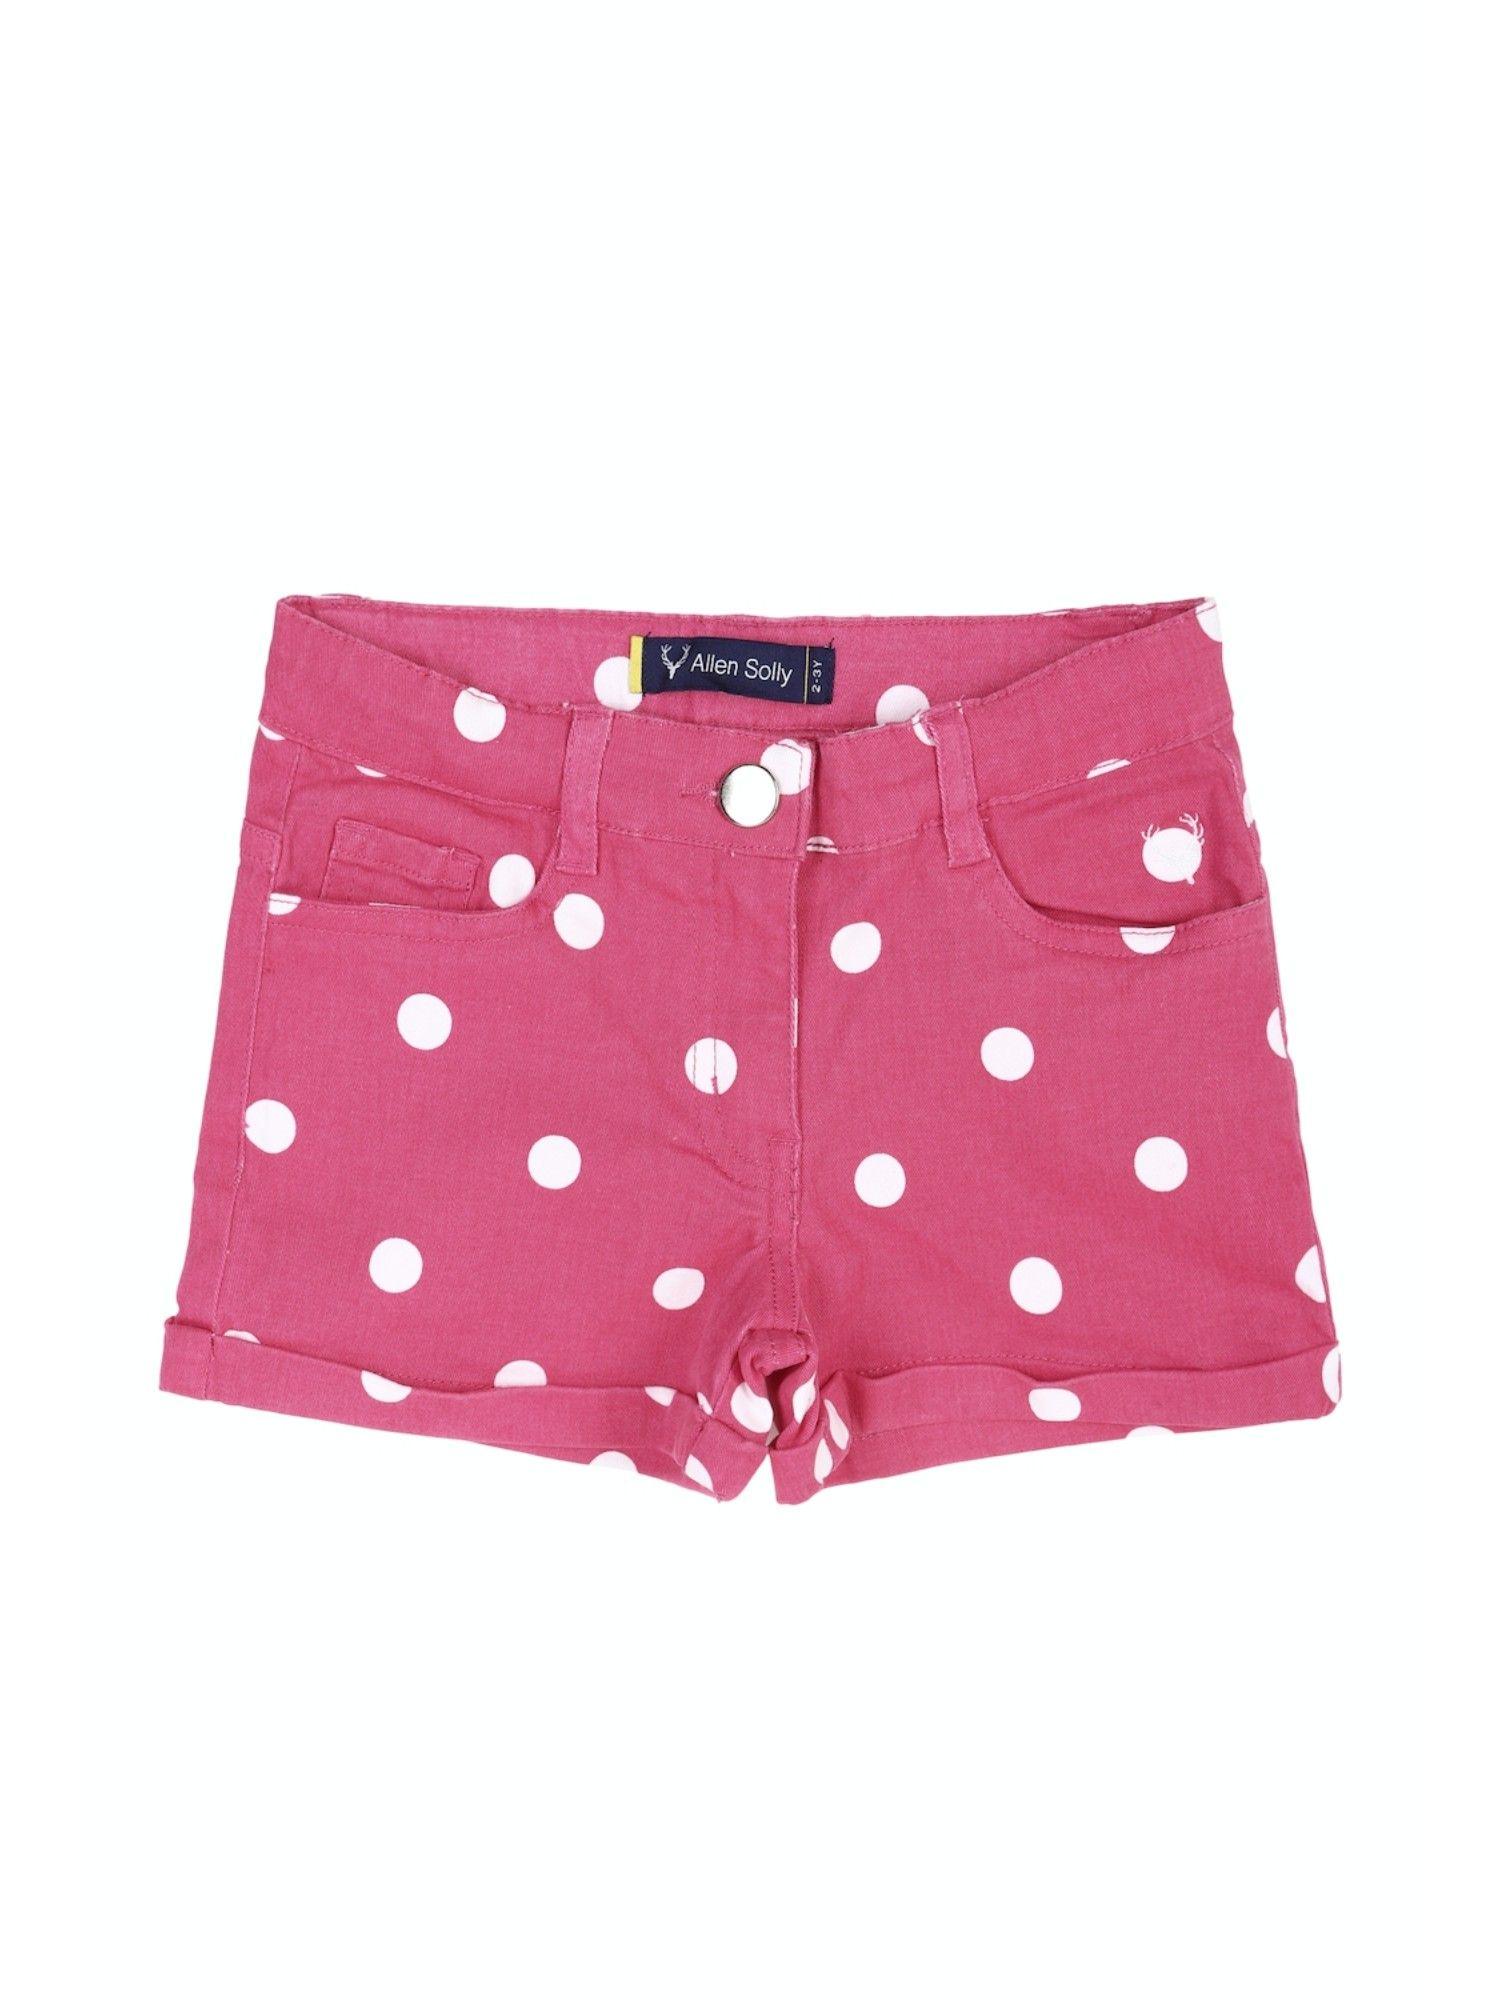 girls pink printed shorts